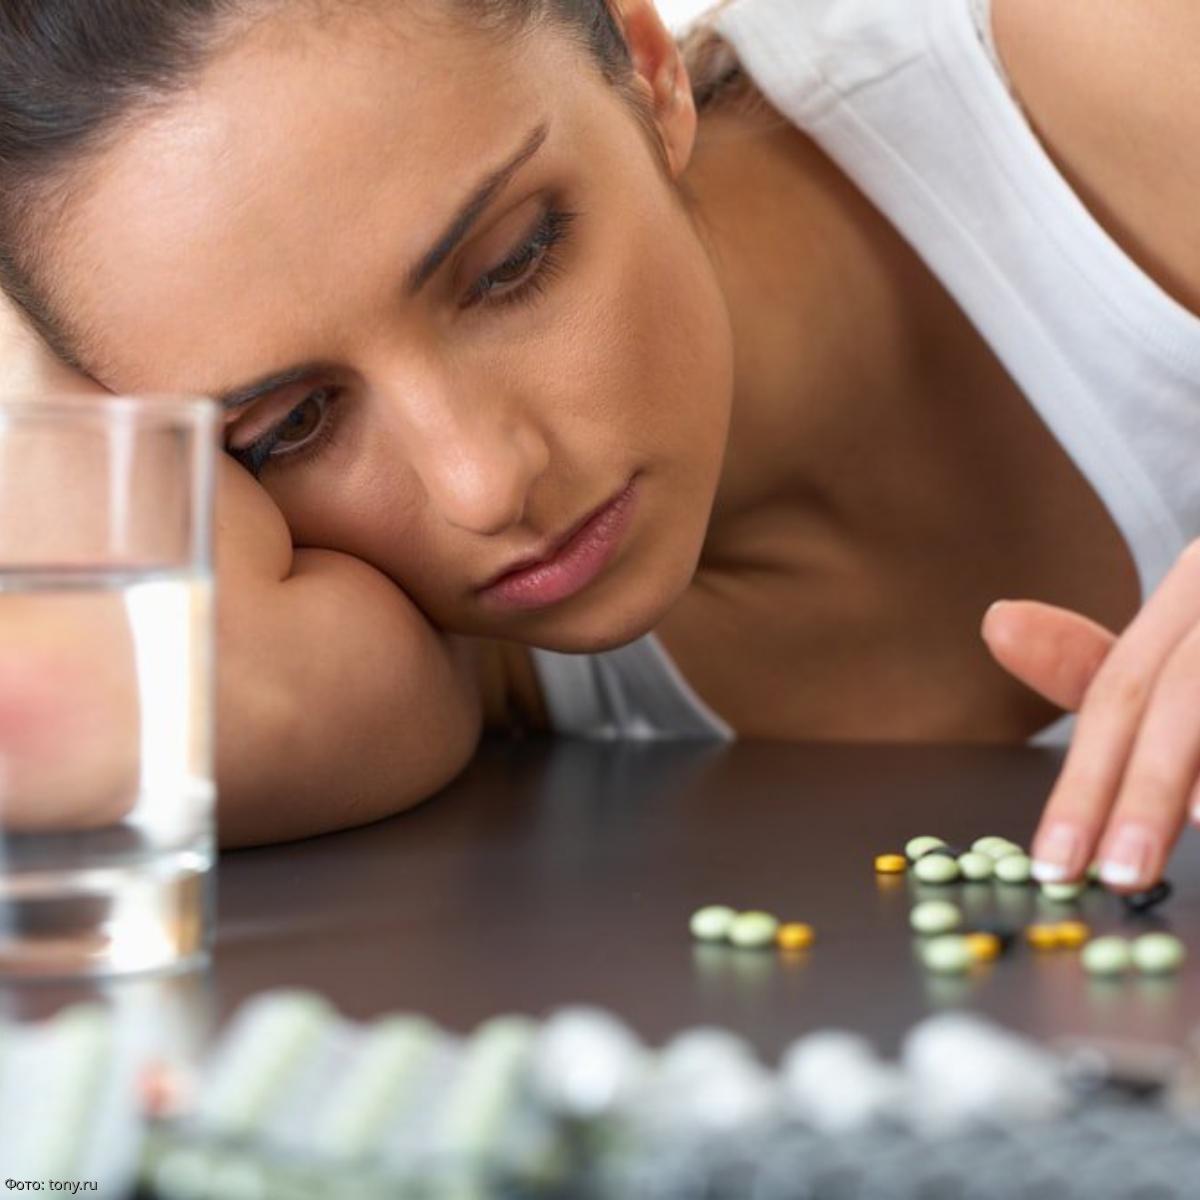 Как перестать пить таблетки. Проблемы со здоровьем. Антидепрессанты девушка. Таблетки зависимость. Девушка пьет таблетки.